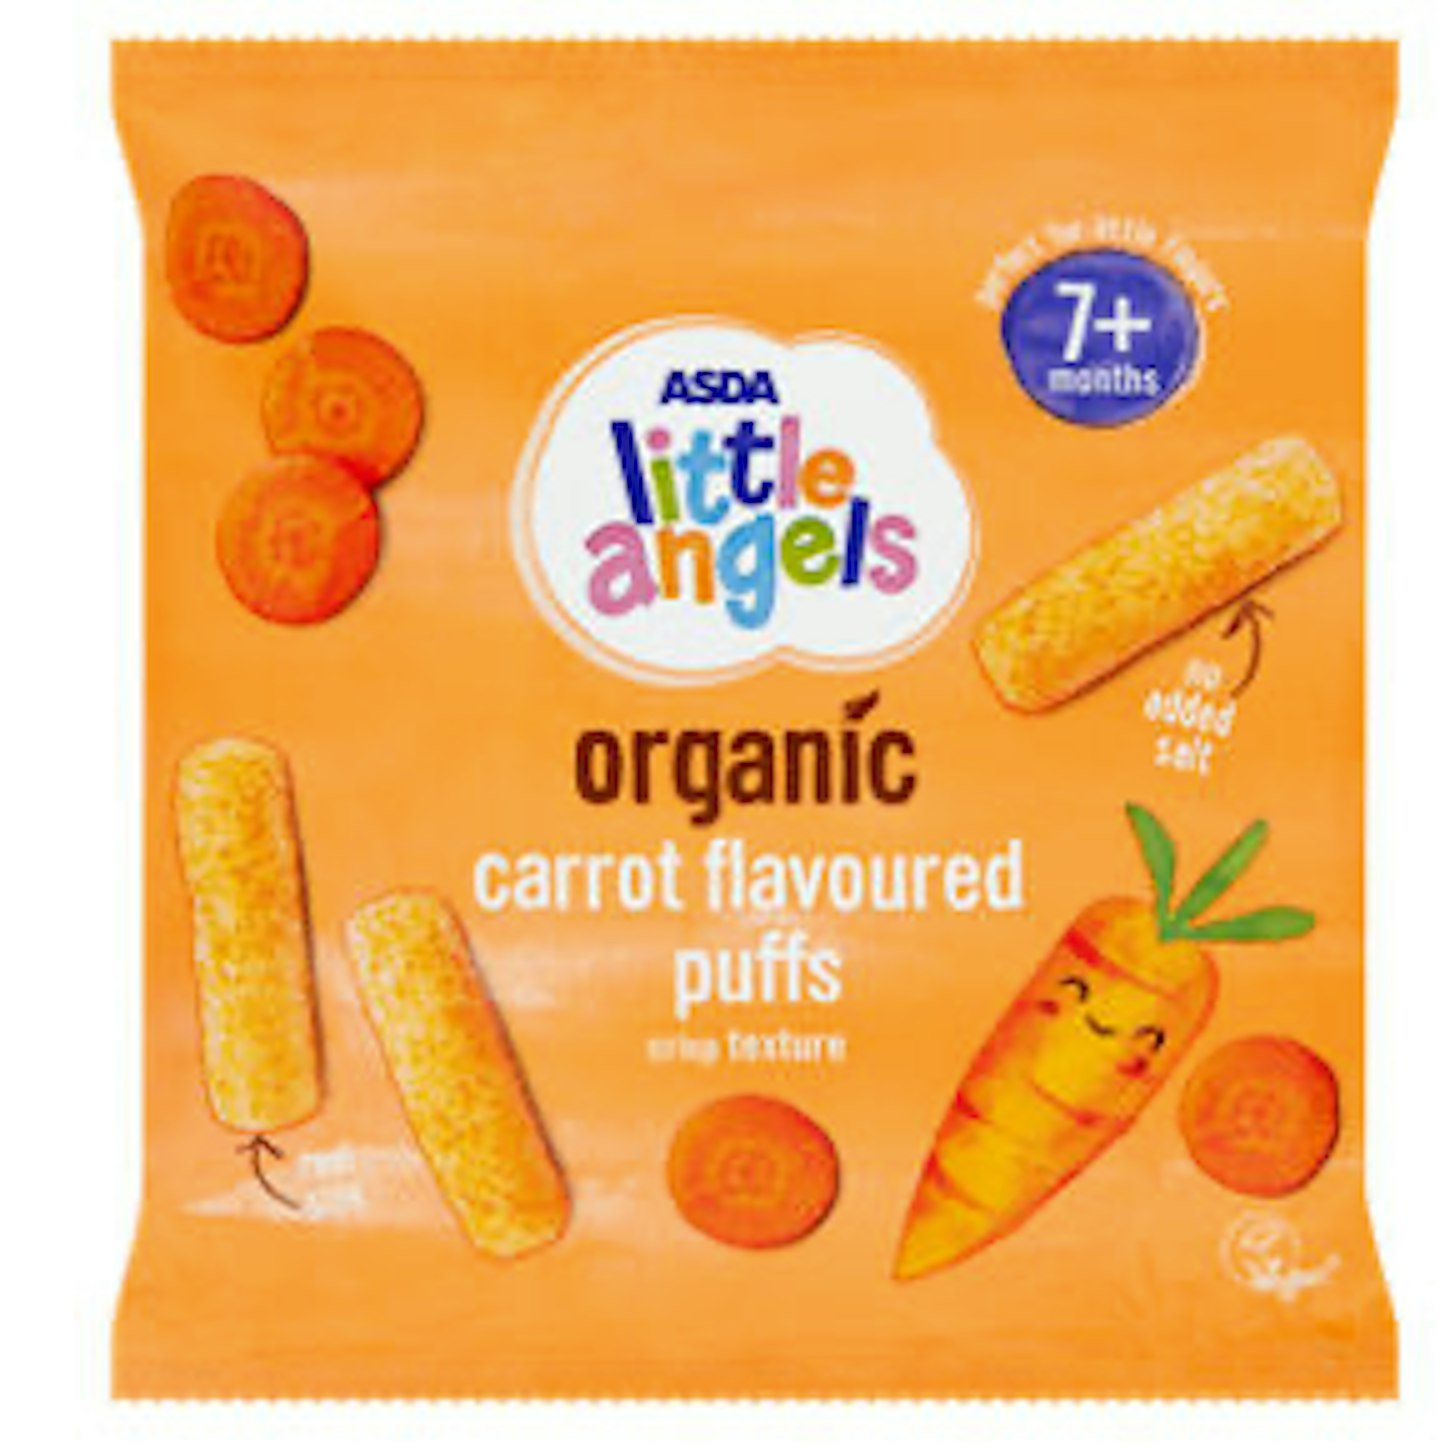 ASDA Little Angels Organic Carrot Flavour Puffs